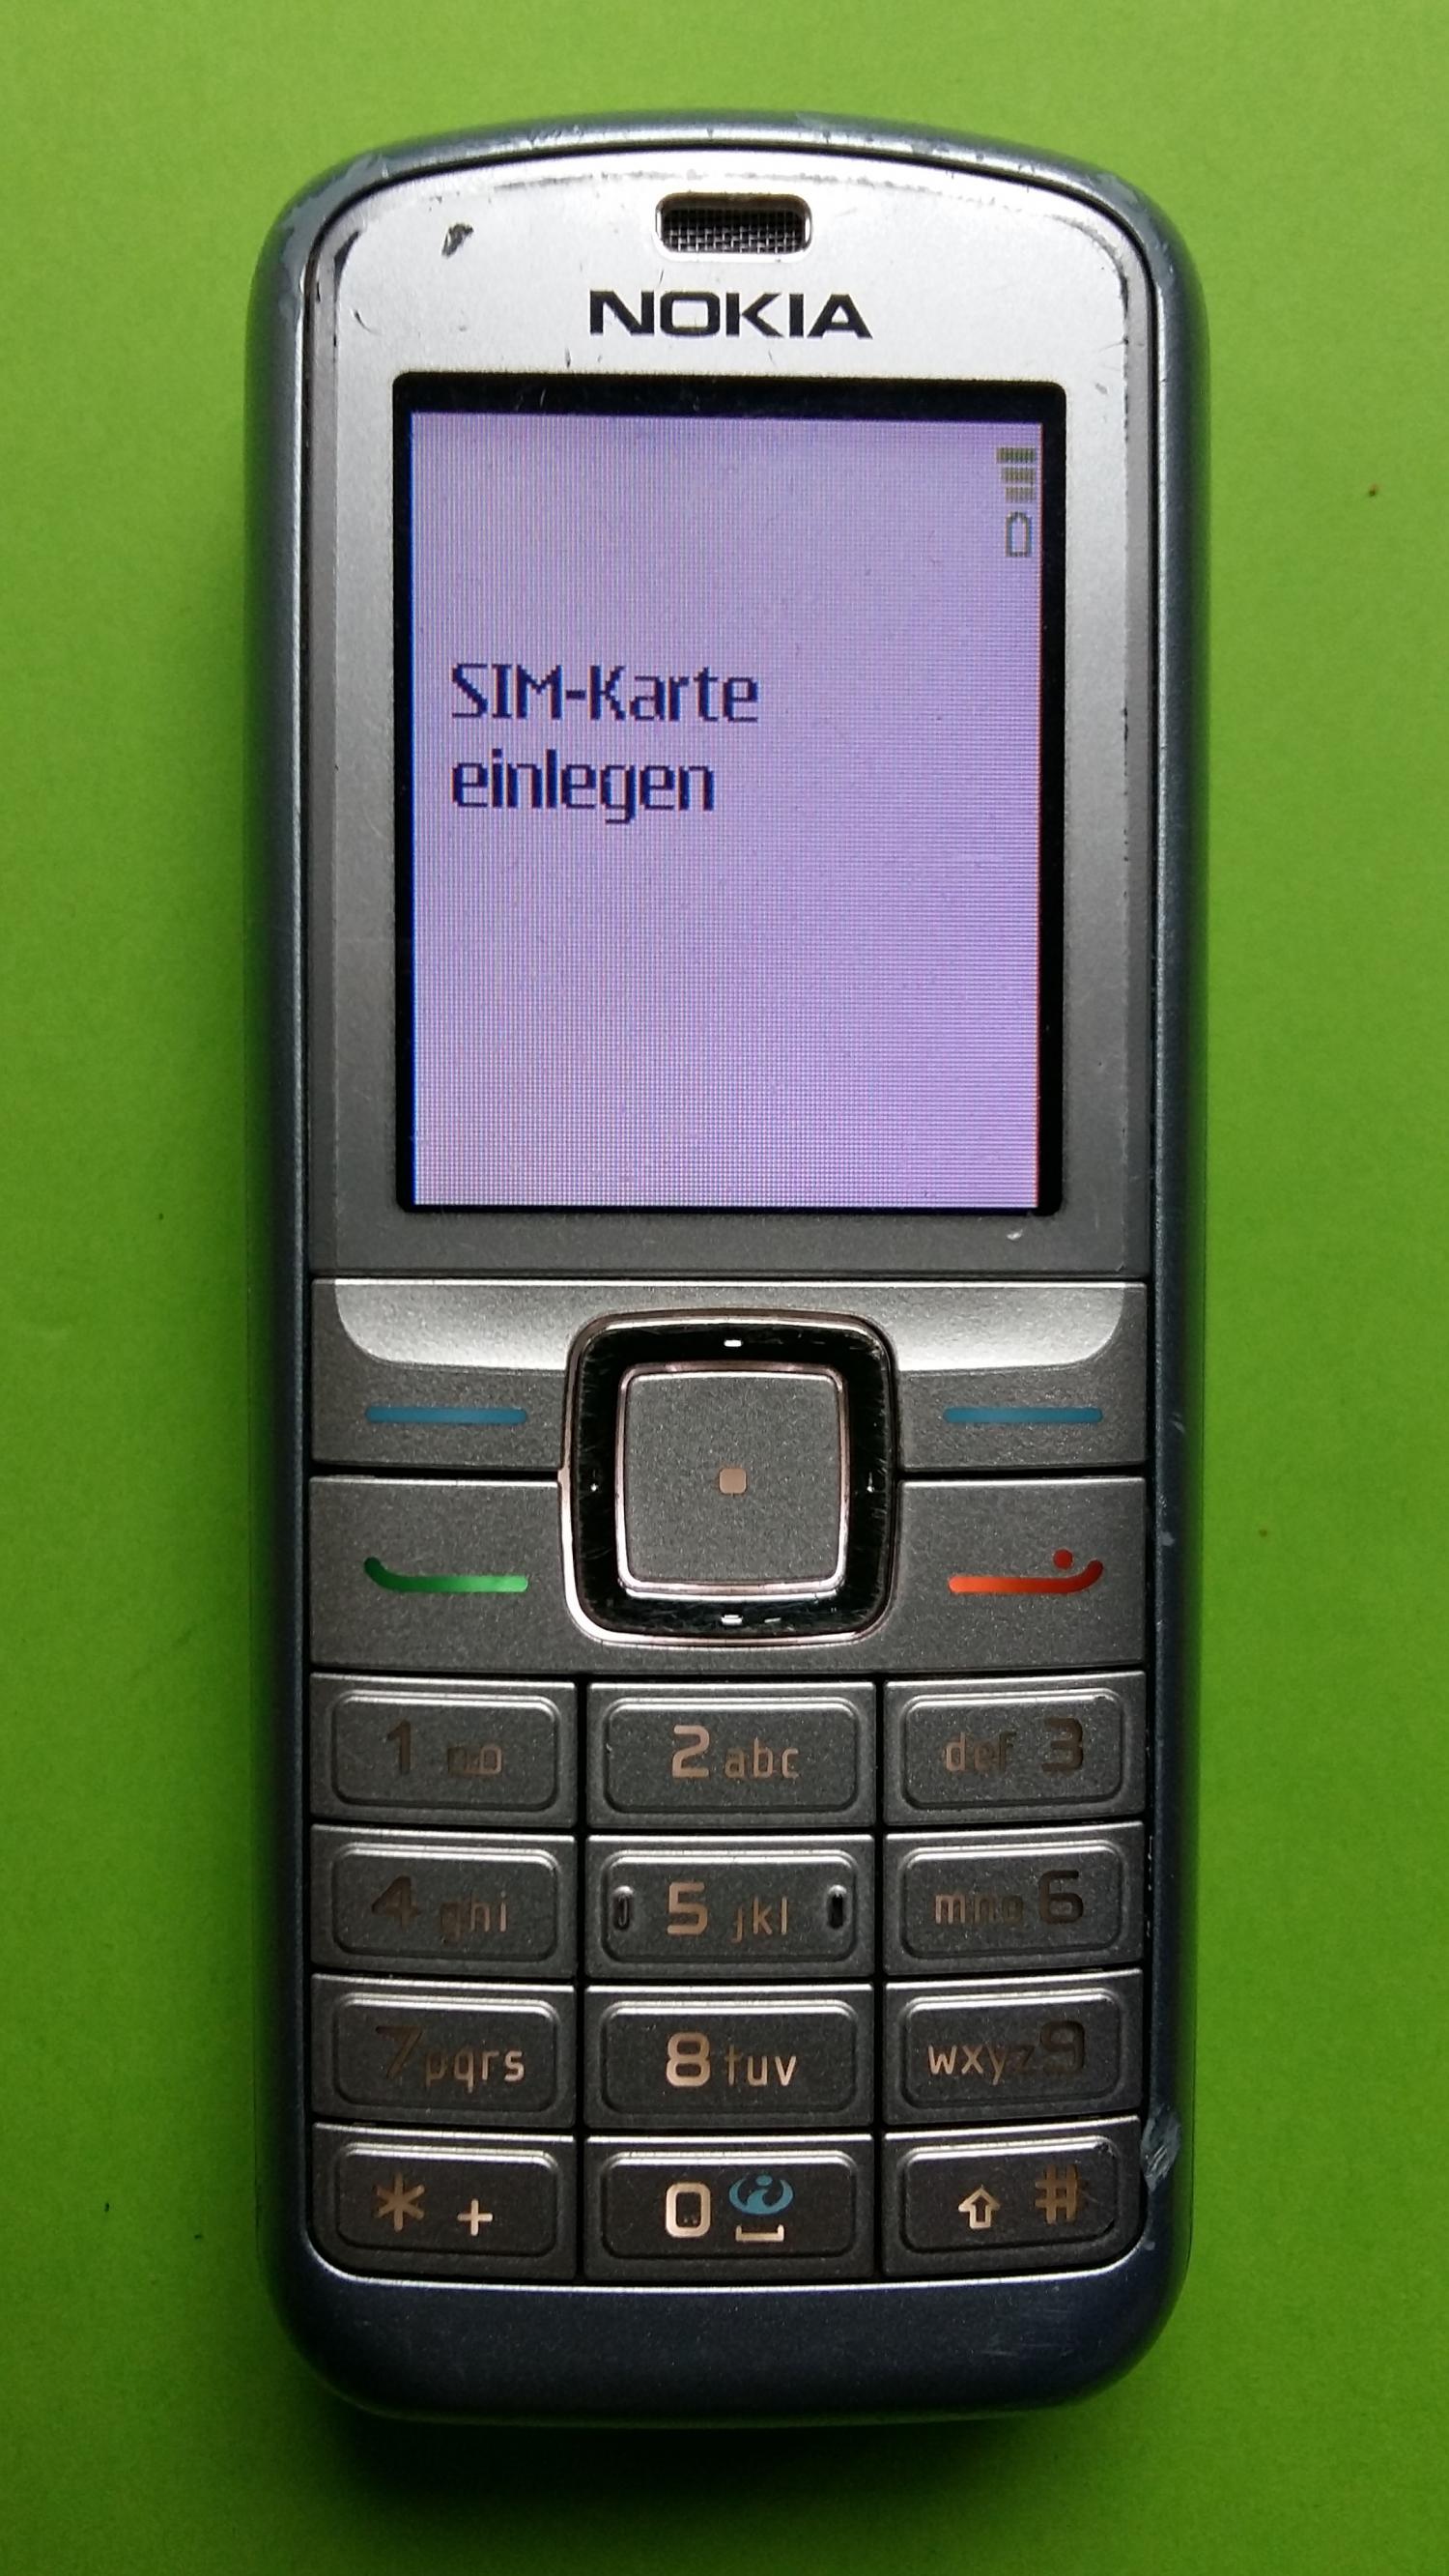 image-7307543-Nokia 6070 (2)1.jpg